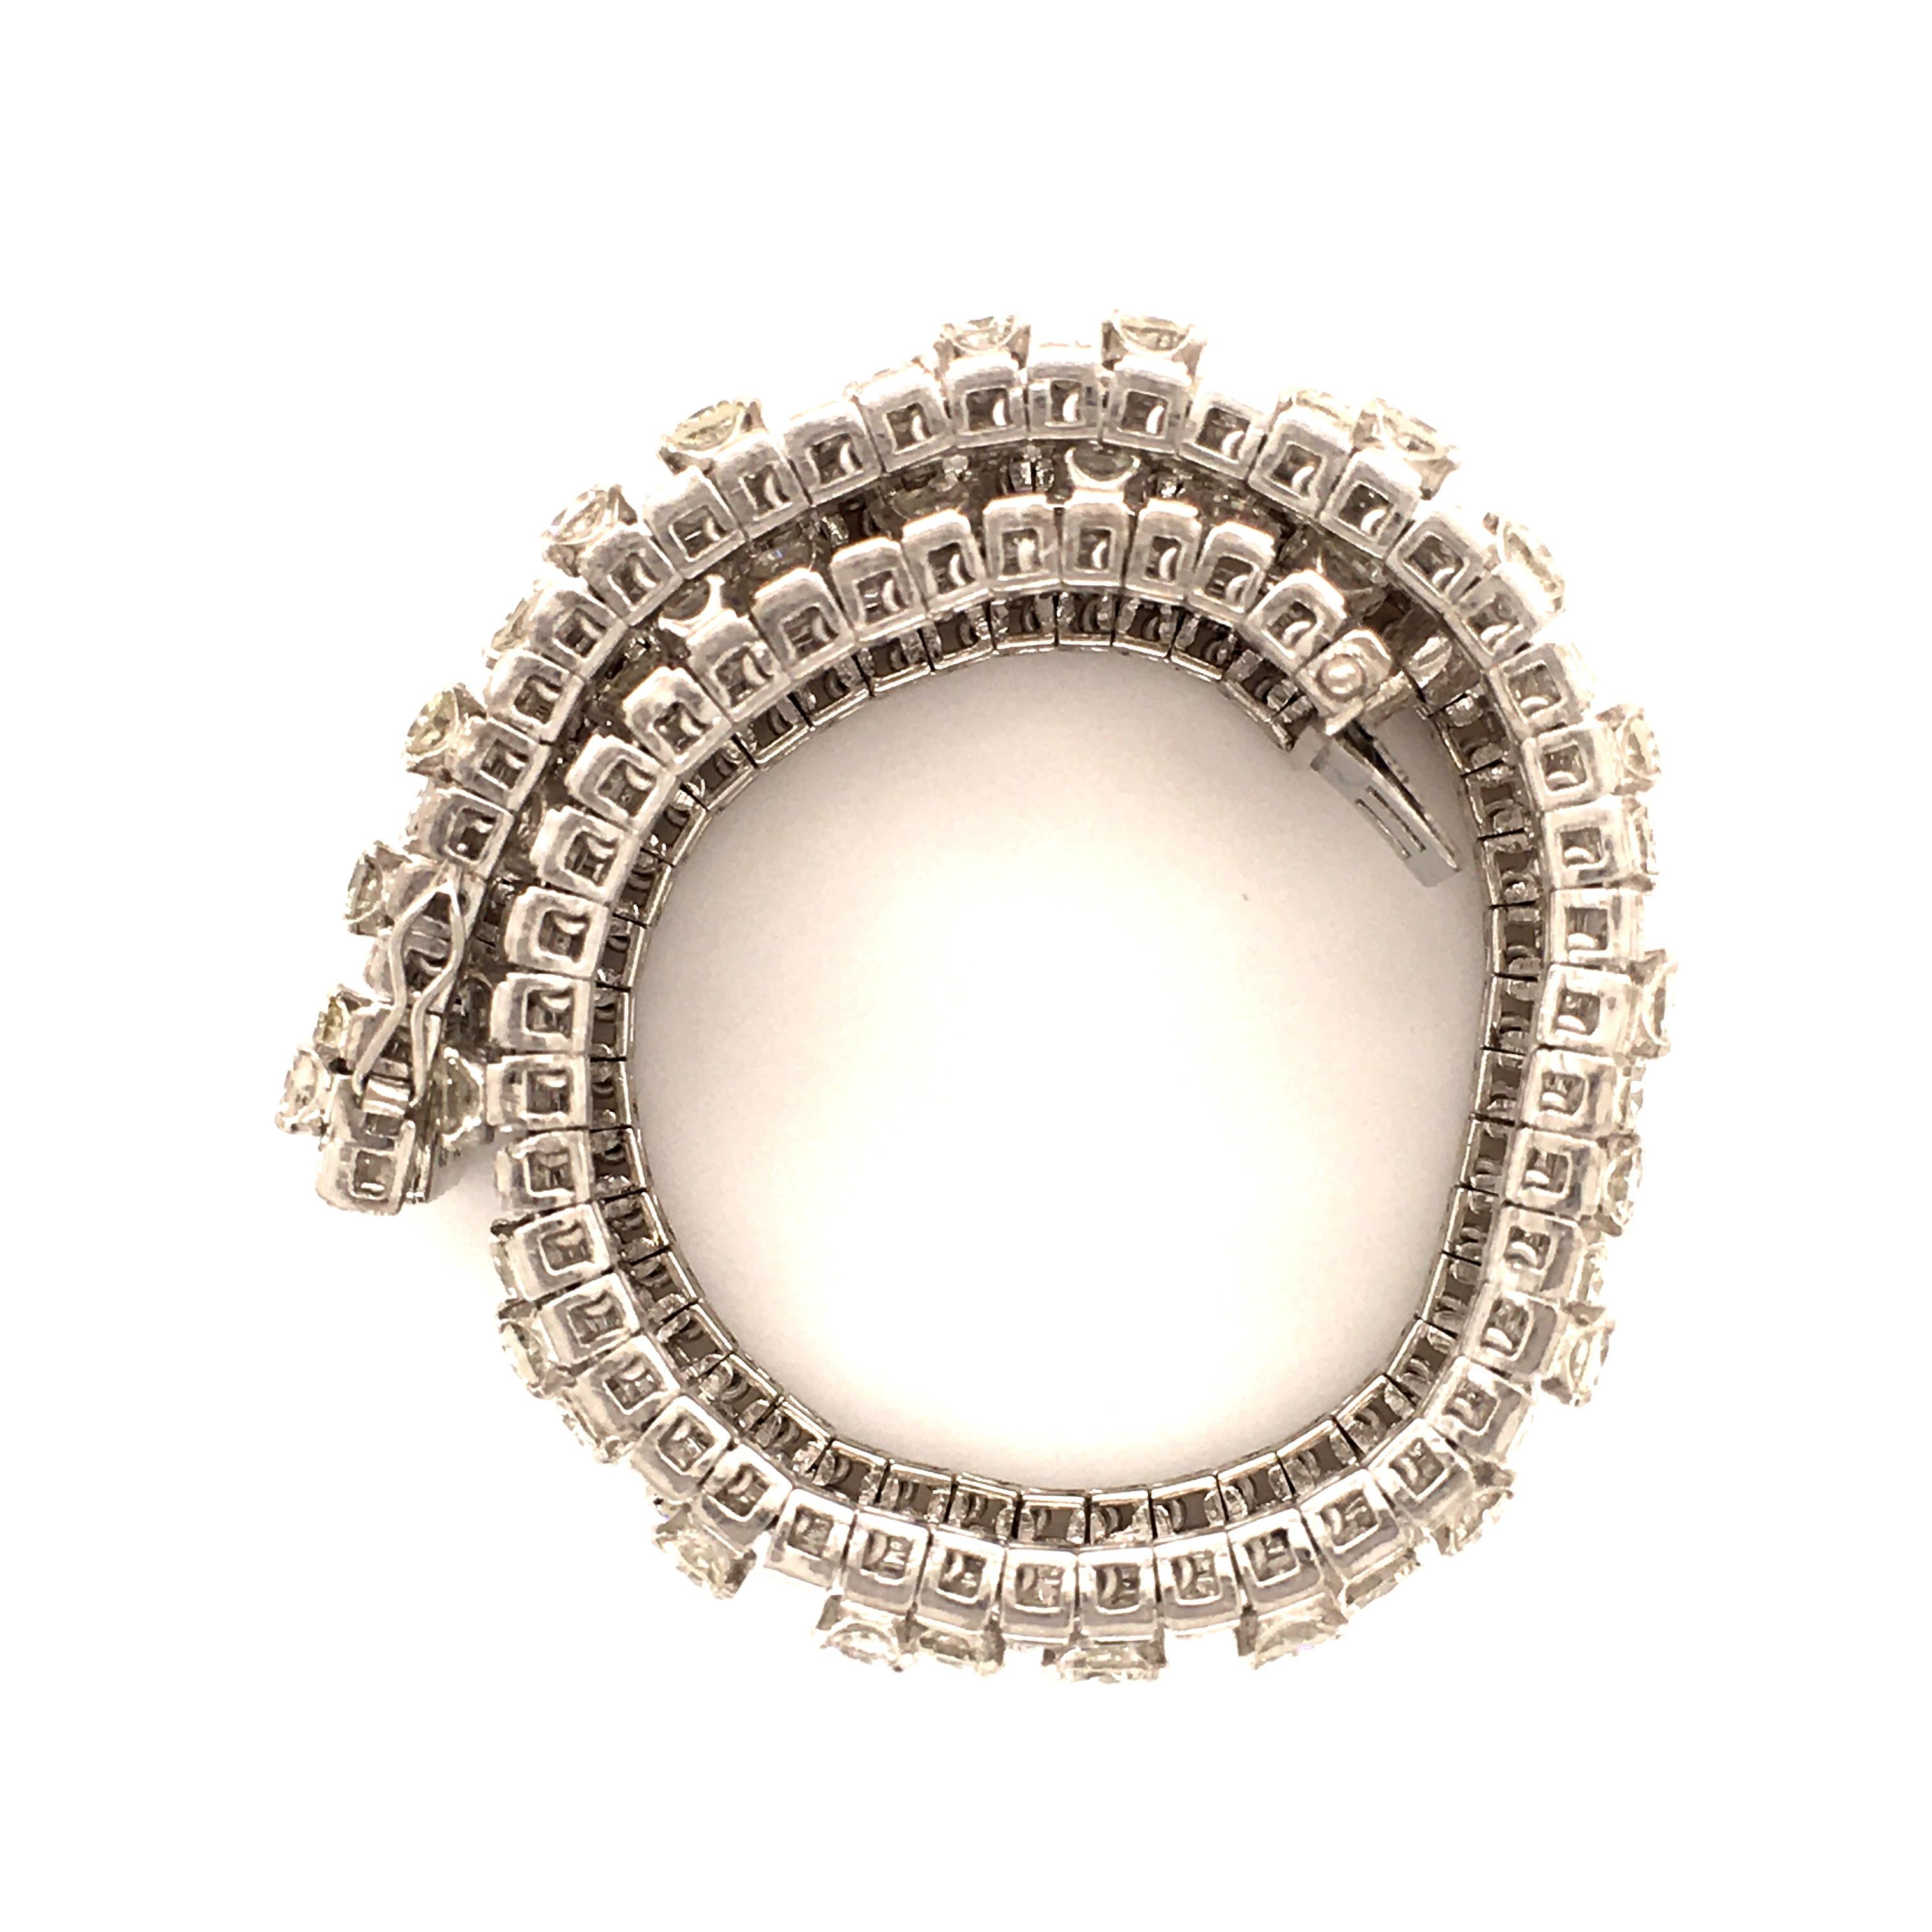 Women's or Men's Diamond Bracelet in White Gold